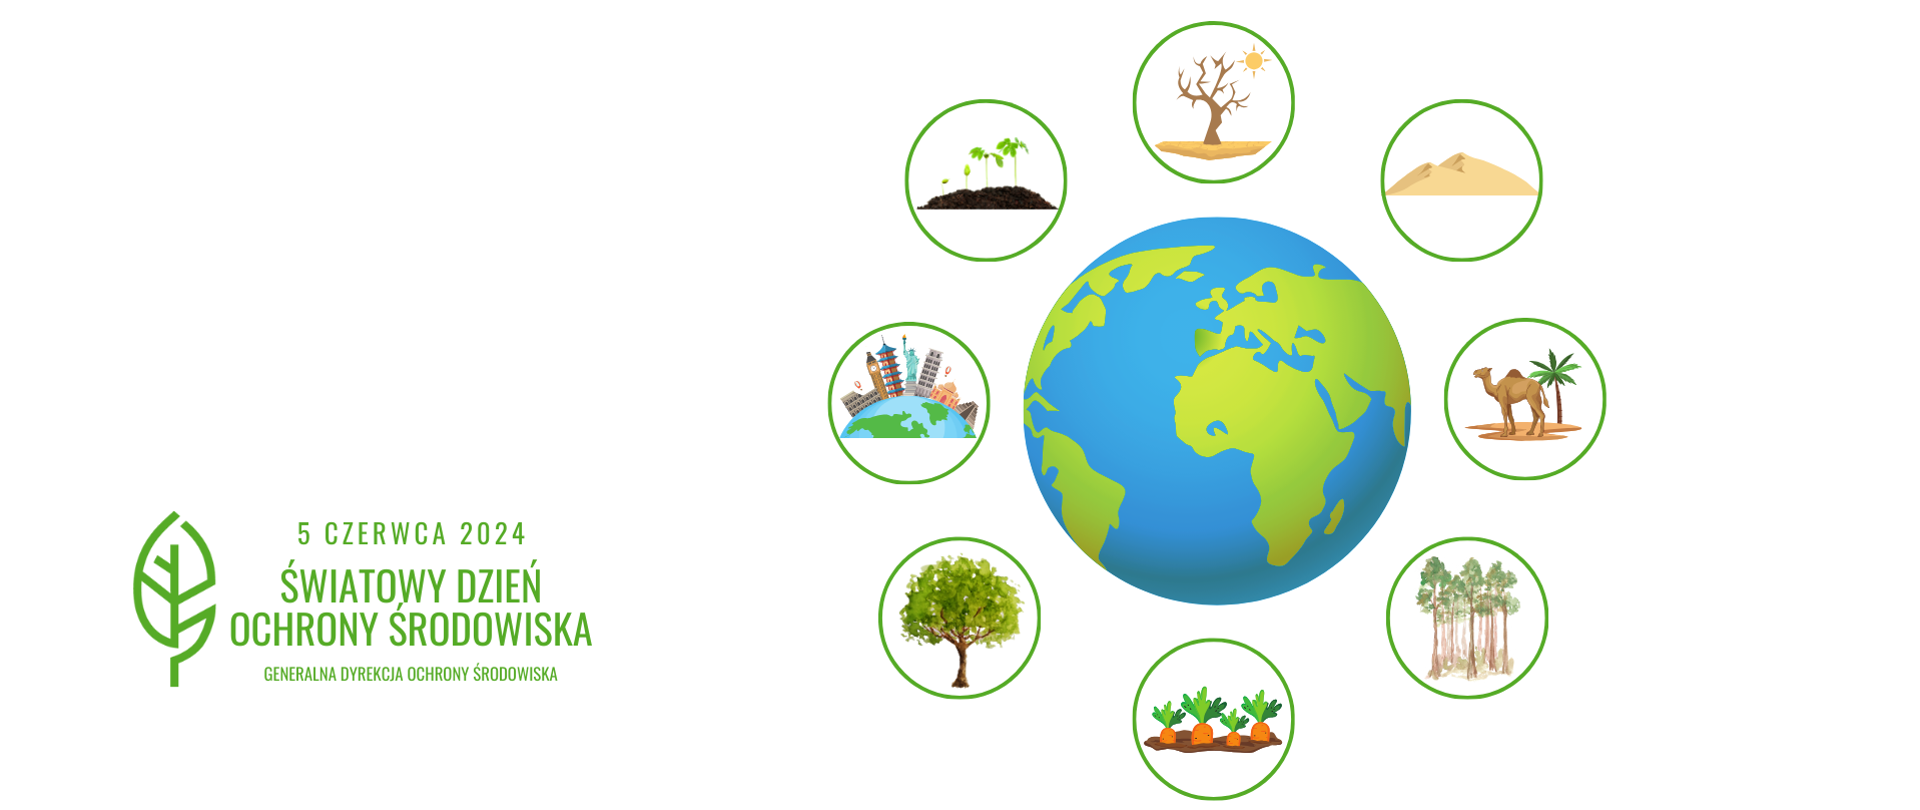 Dookoła rysunku kuli ziemskiej rysunku uschniętego drzewa, pustyni, lasów, miast, drzew. warzyw. W lewym dolnym rogu napis: 5 czerwca 2024 Światowy Dzień Ochrony Środowiska i logotyp Generalnej Dyrekcji Ochrony Środowiska (zielony liść).